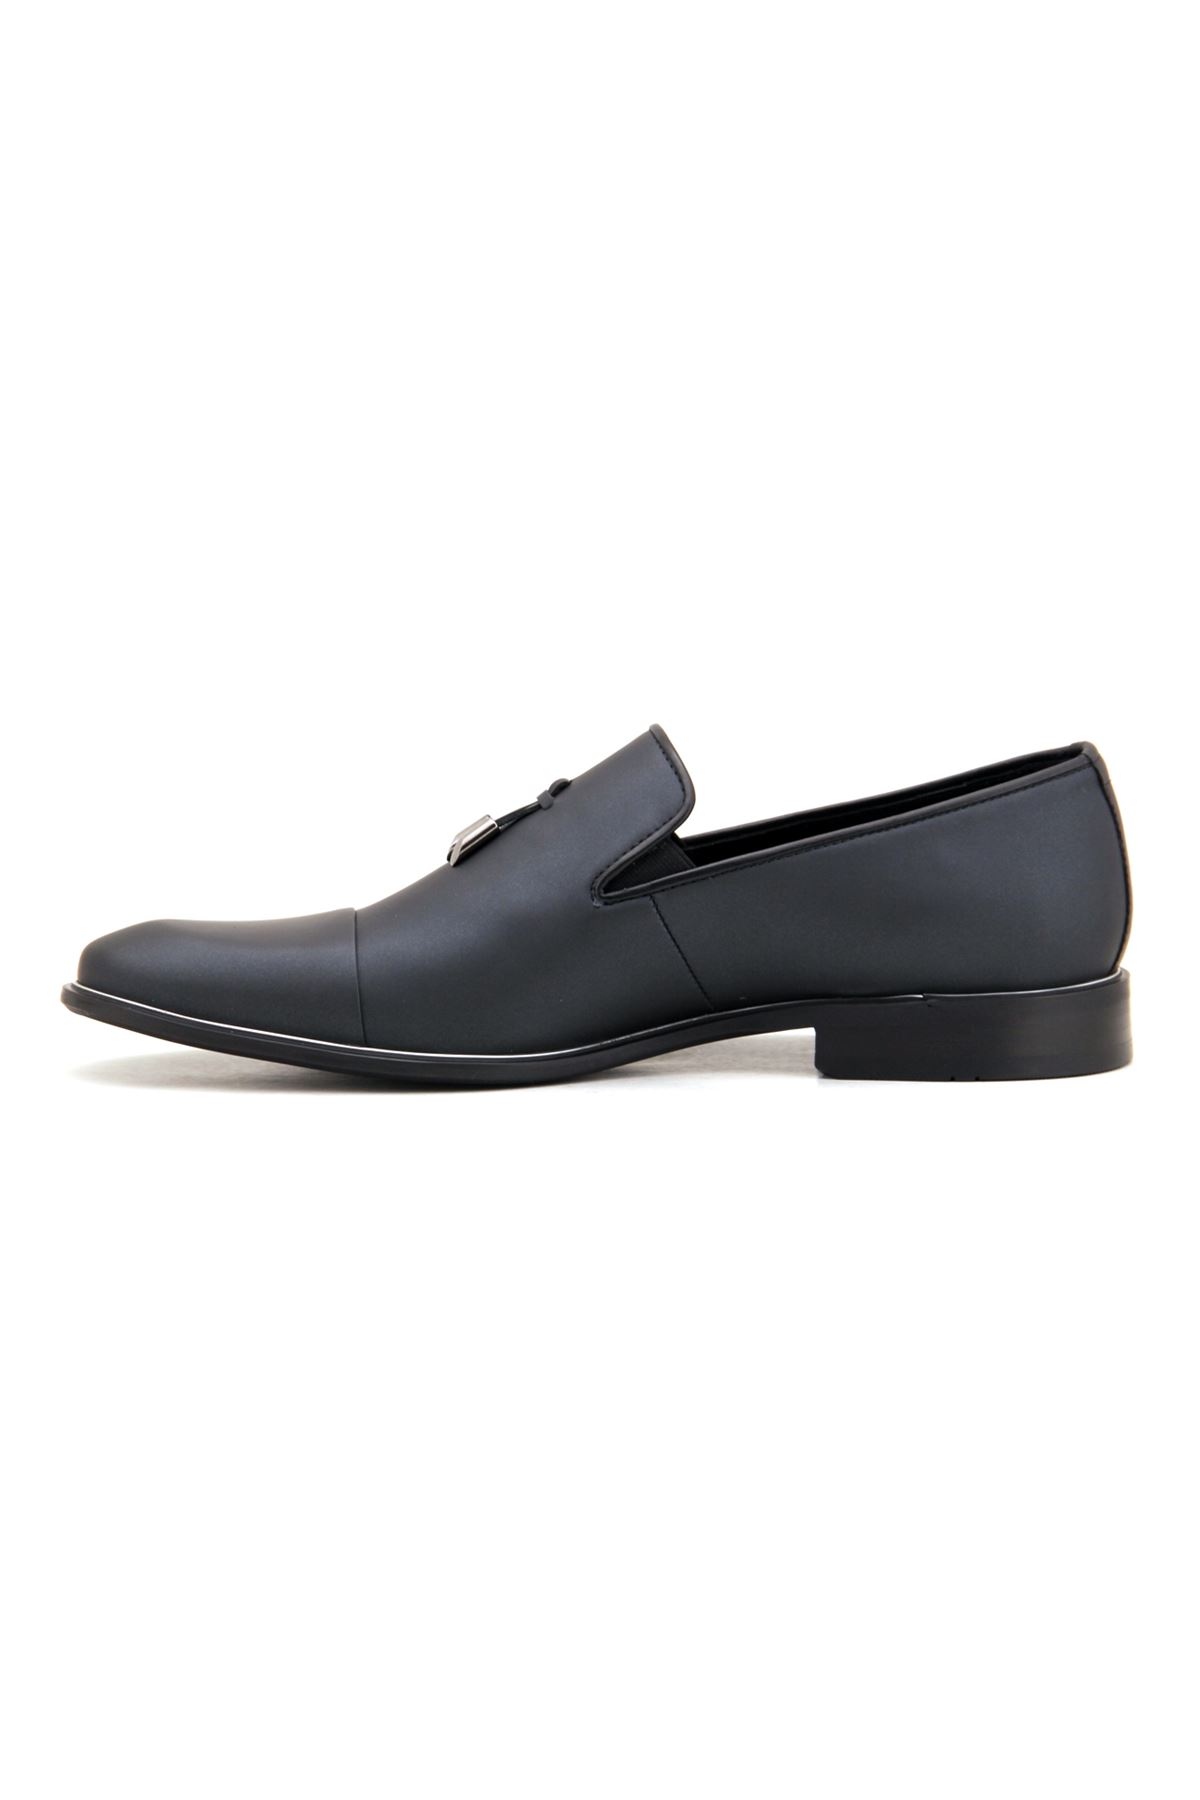 Libero 2385 Klasik Erkek Ayakkabı - Siyah